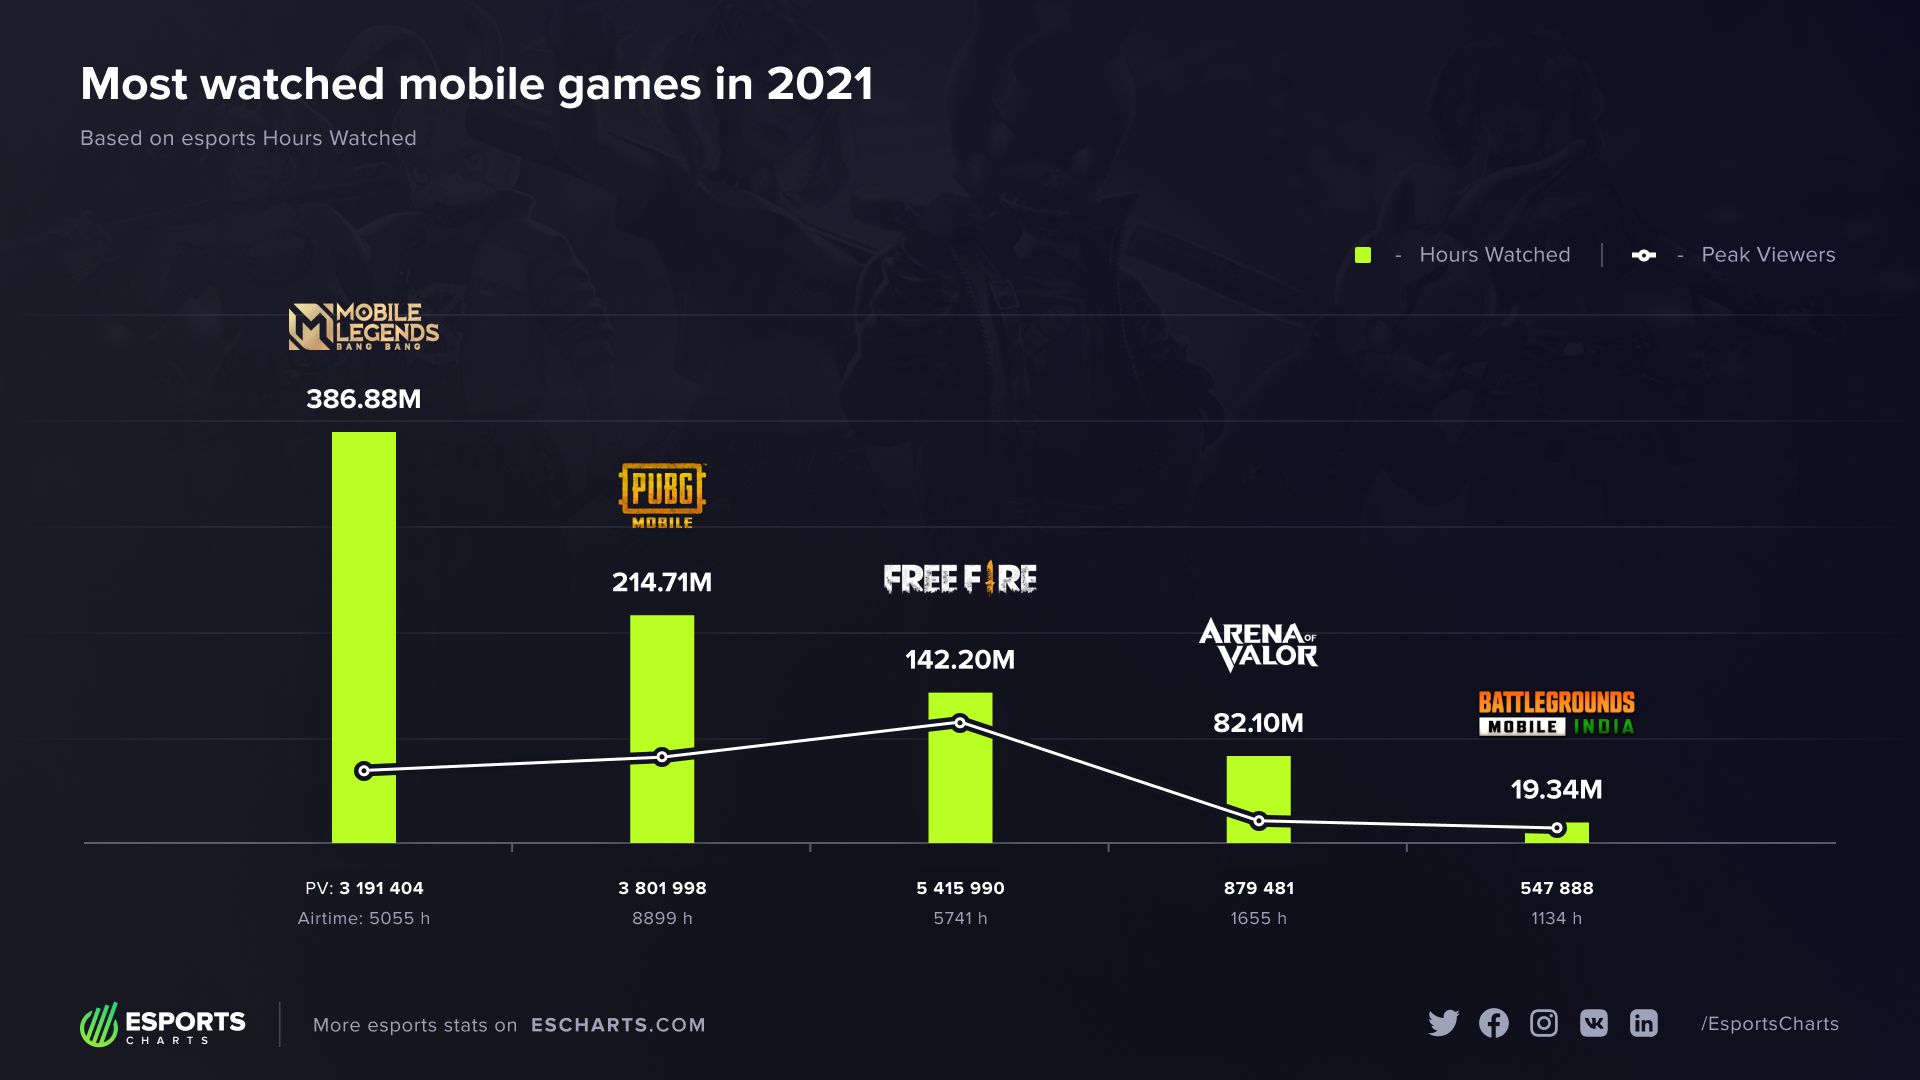 Топ-5 мобильных киберспортивных игр по количеству часов просмотра турниров в 2021 году | Источник: escharts.com